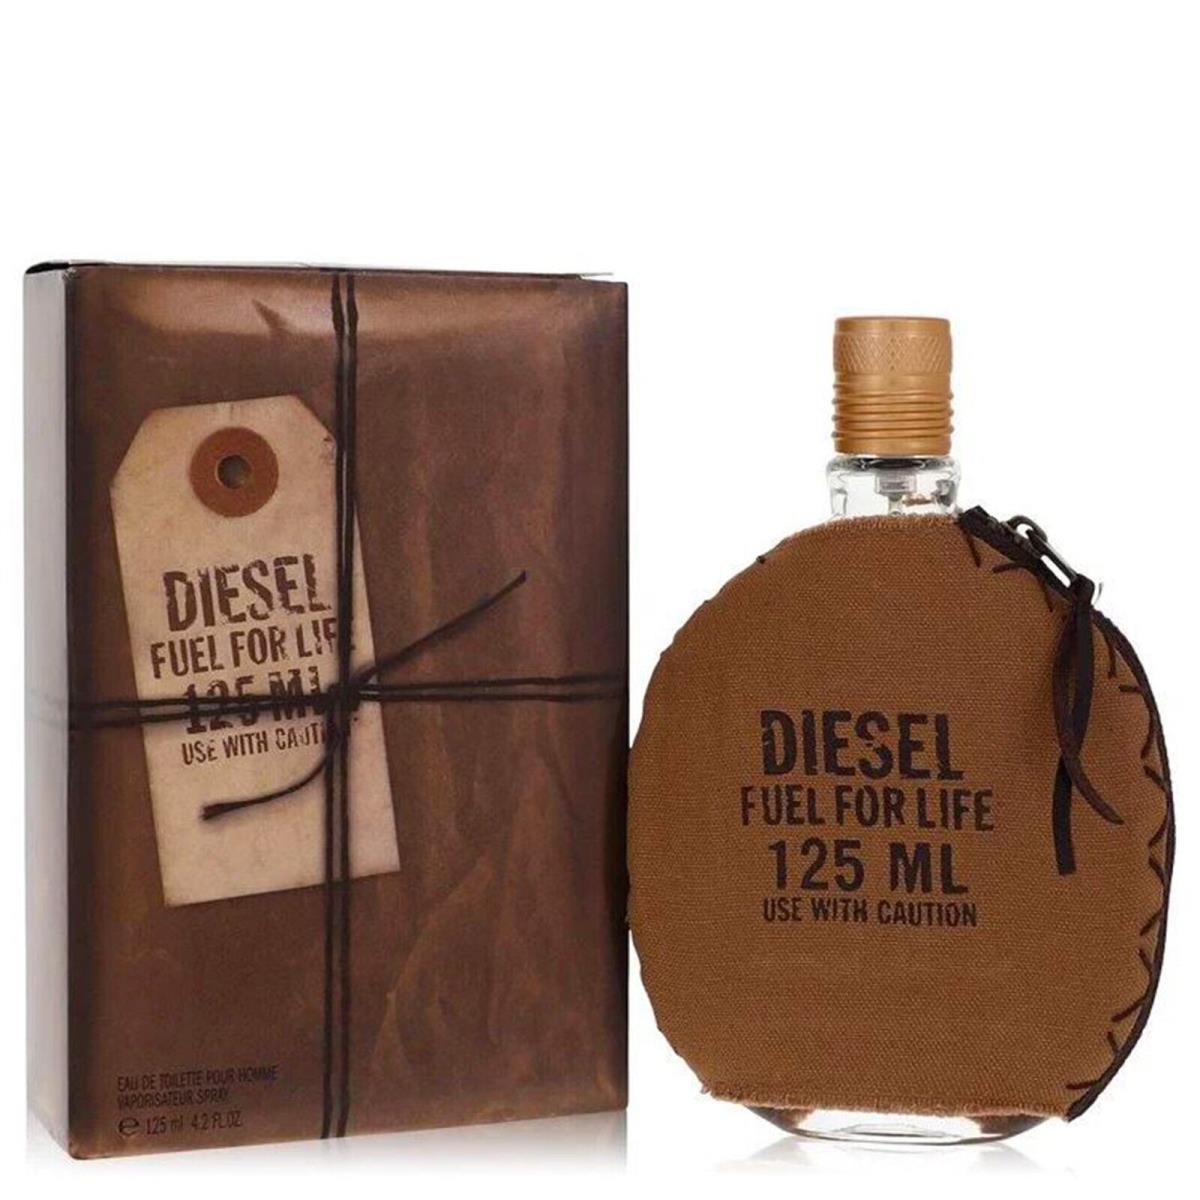 Fuel For Life Cologne by Diesel Men Perfume Eau De Toilette Spray 4.2 oz 125 ml